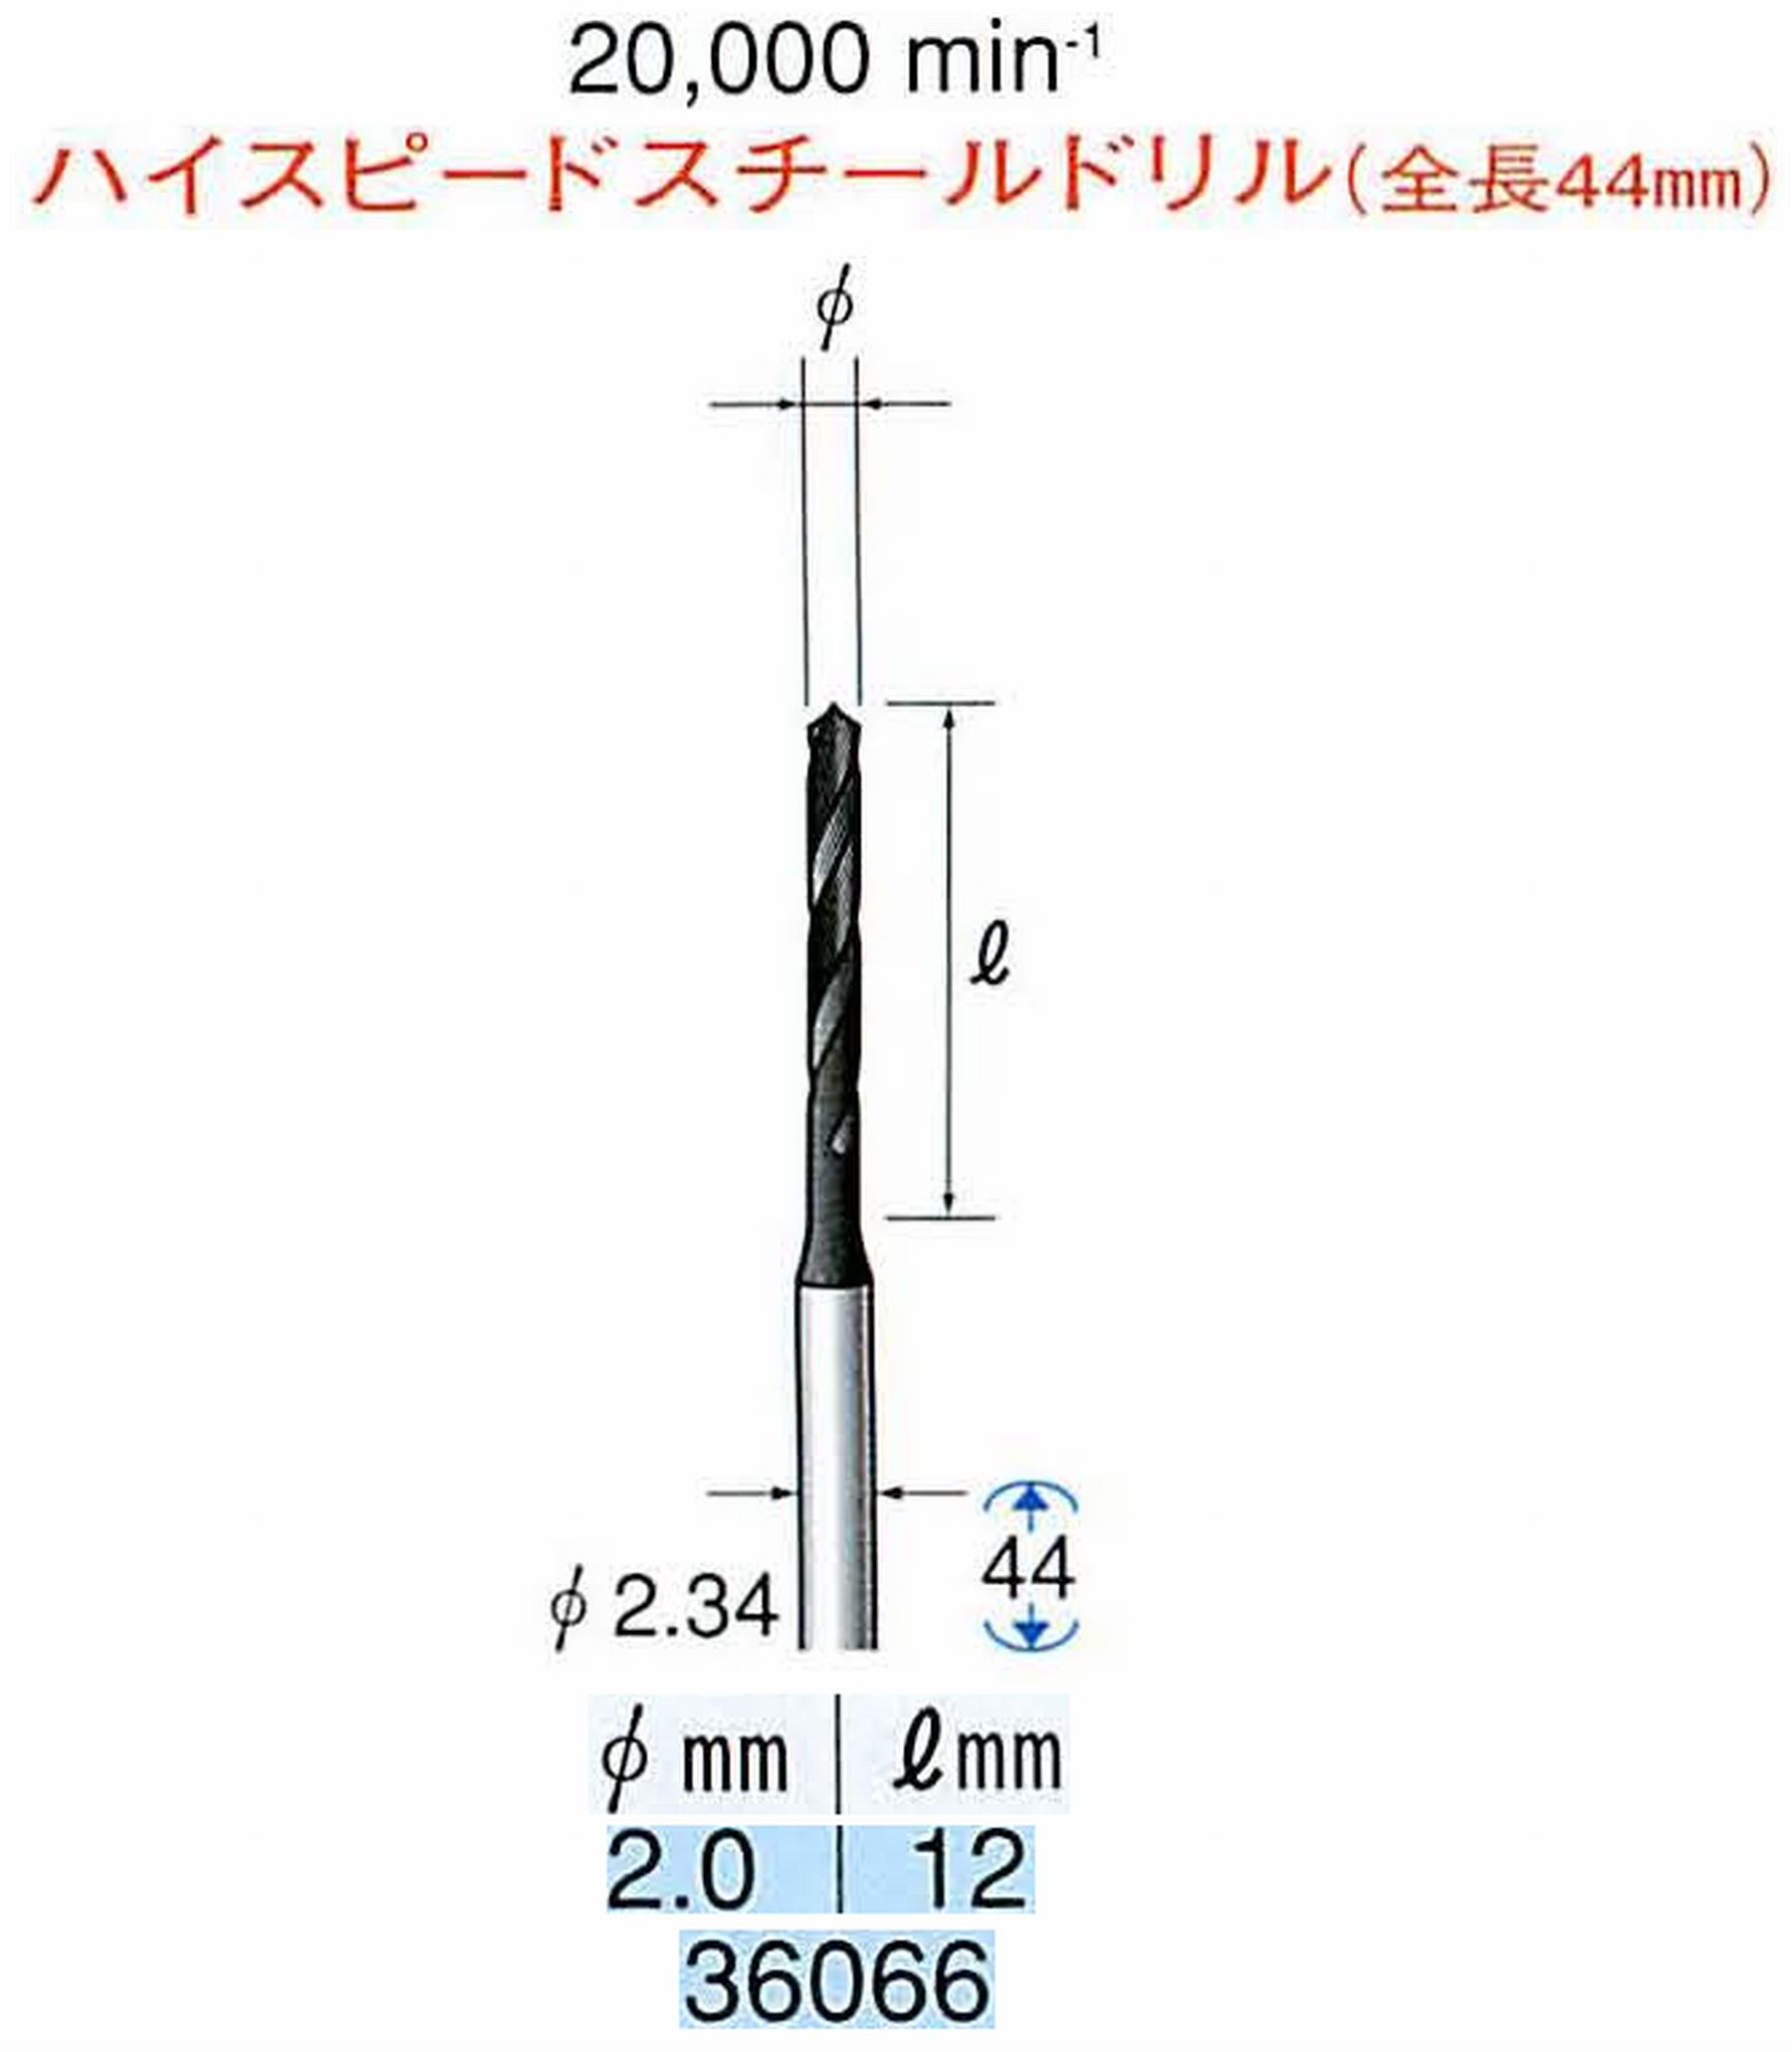 ナカニシ/NAKANISHI ツイストドリル ハイスピードスチール(H.S.S)ドリル(全長44mm) 軸径(シャンク) φ2.34mm 36066